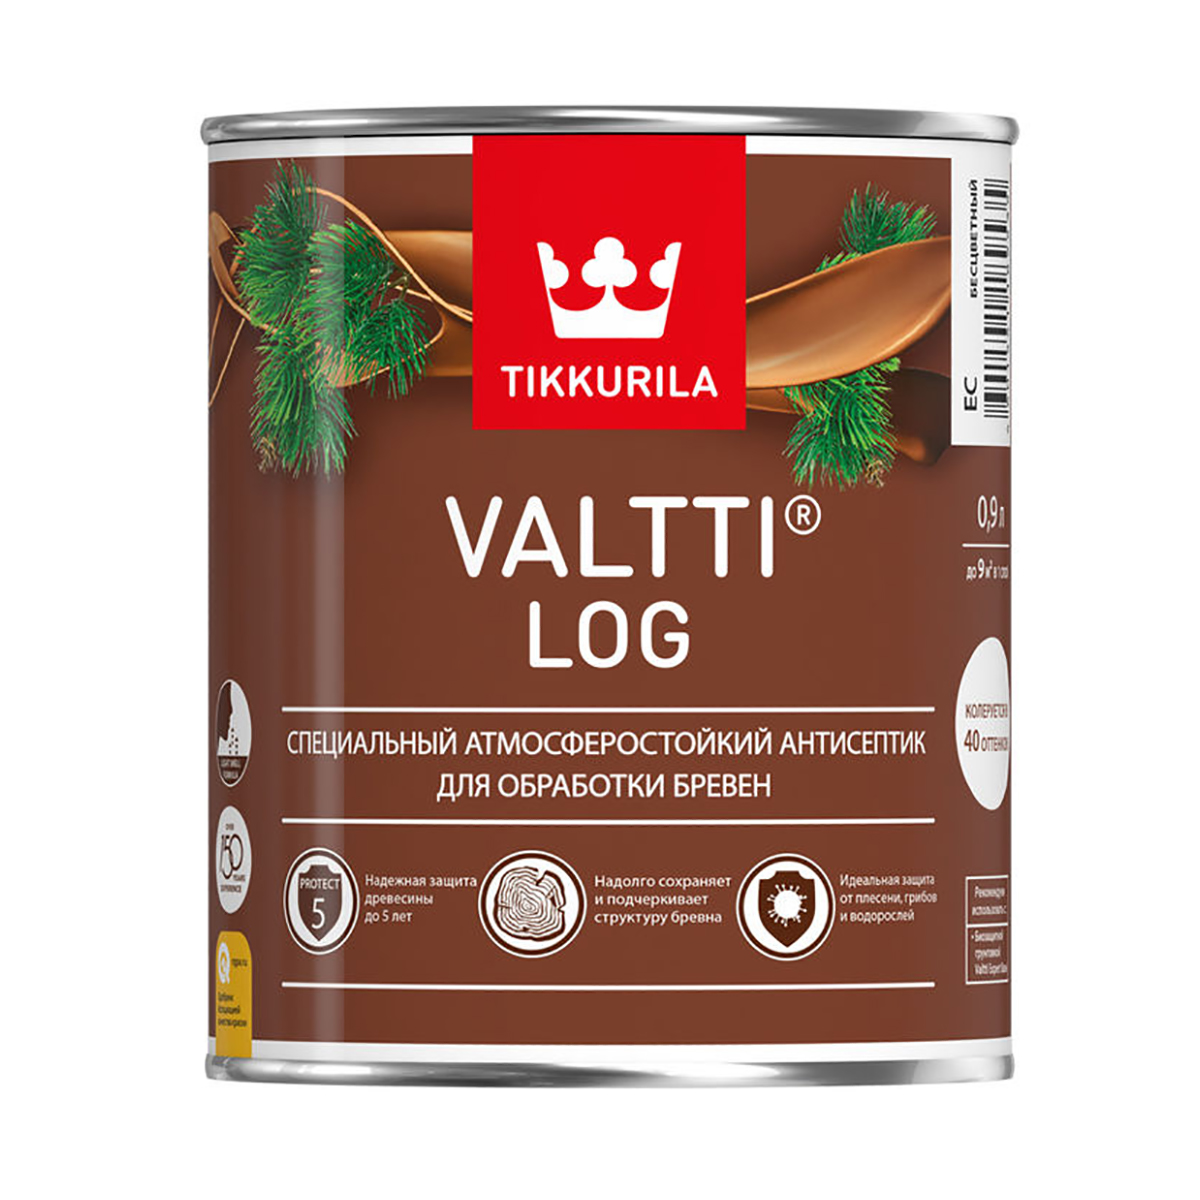 Валтти log  рябина  0,9 л   антисептик для дерева TIKKURILA